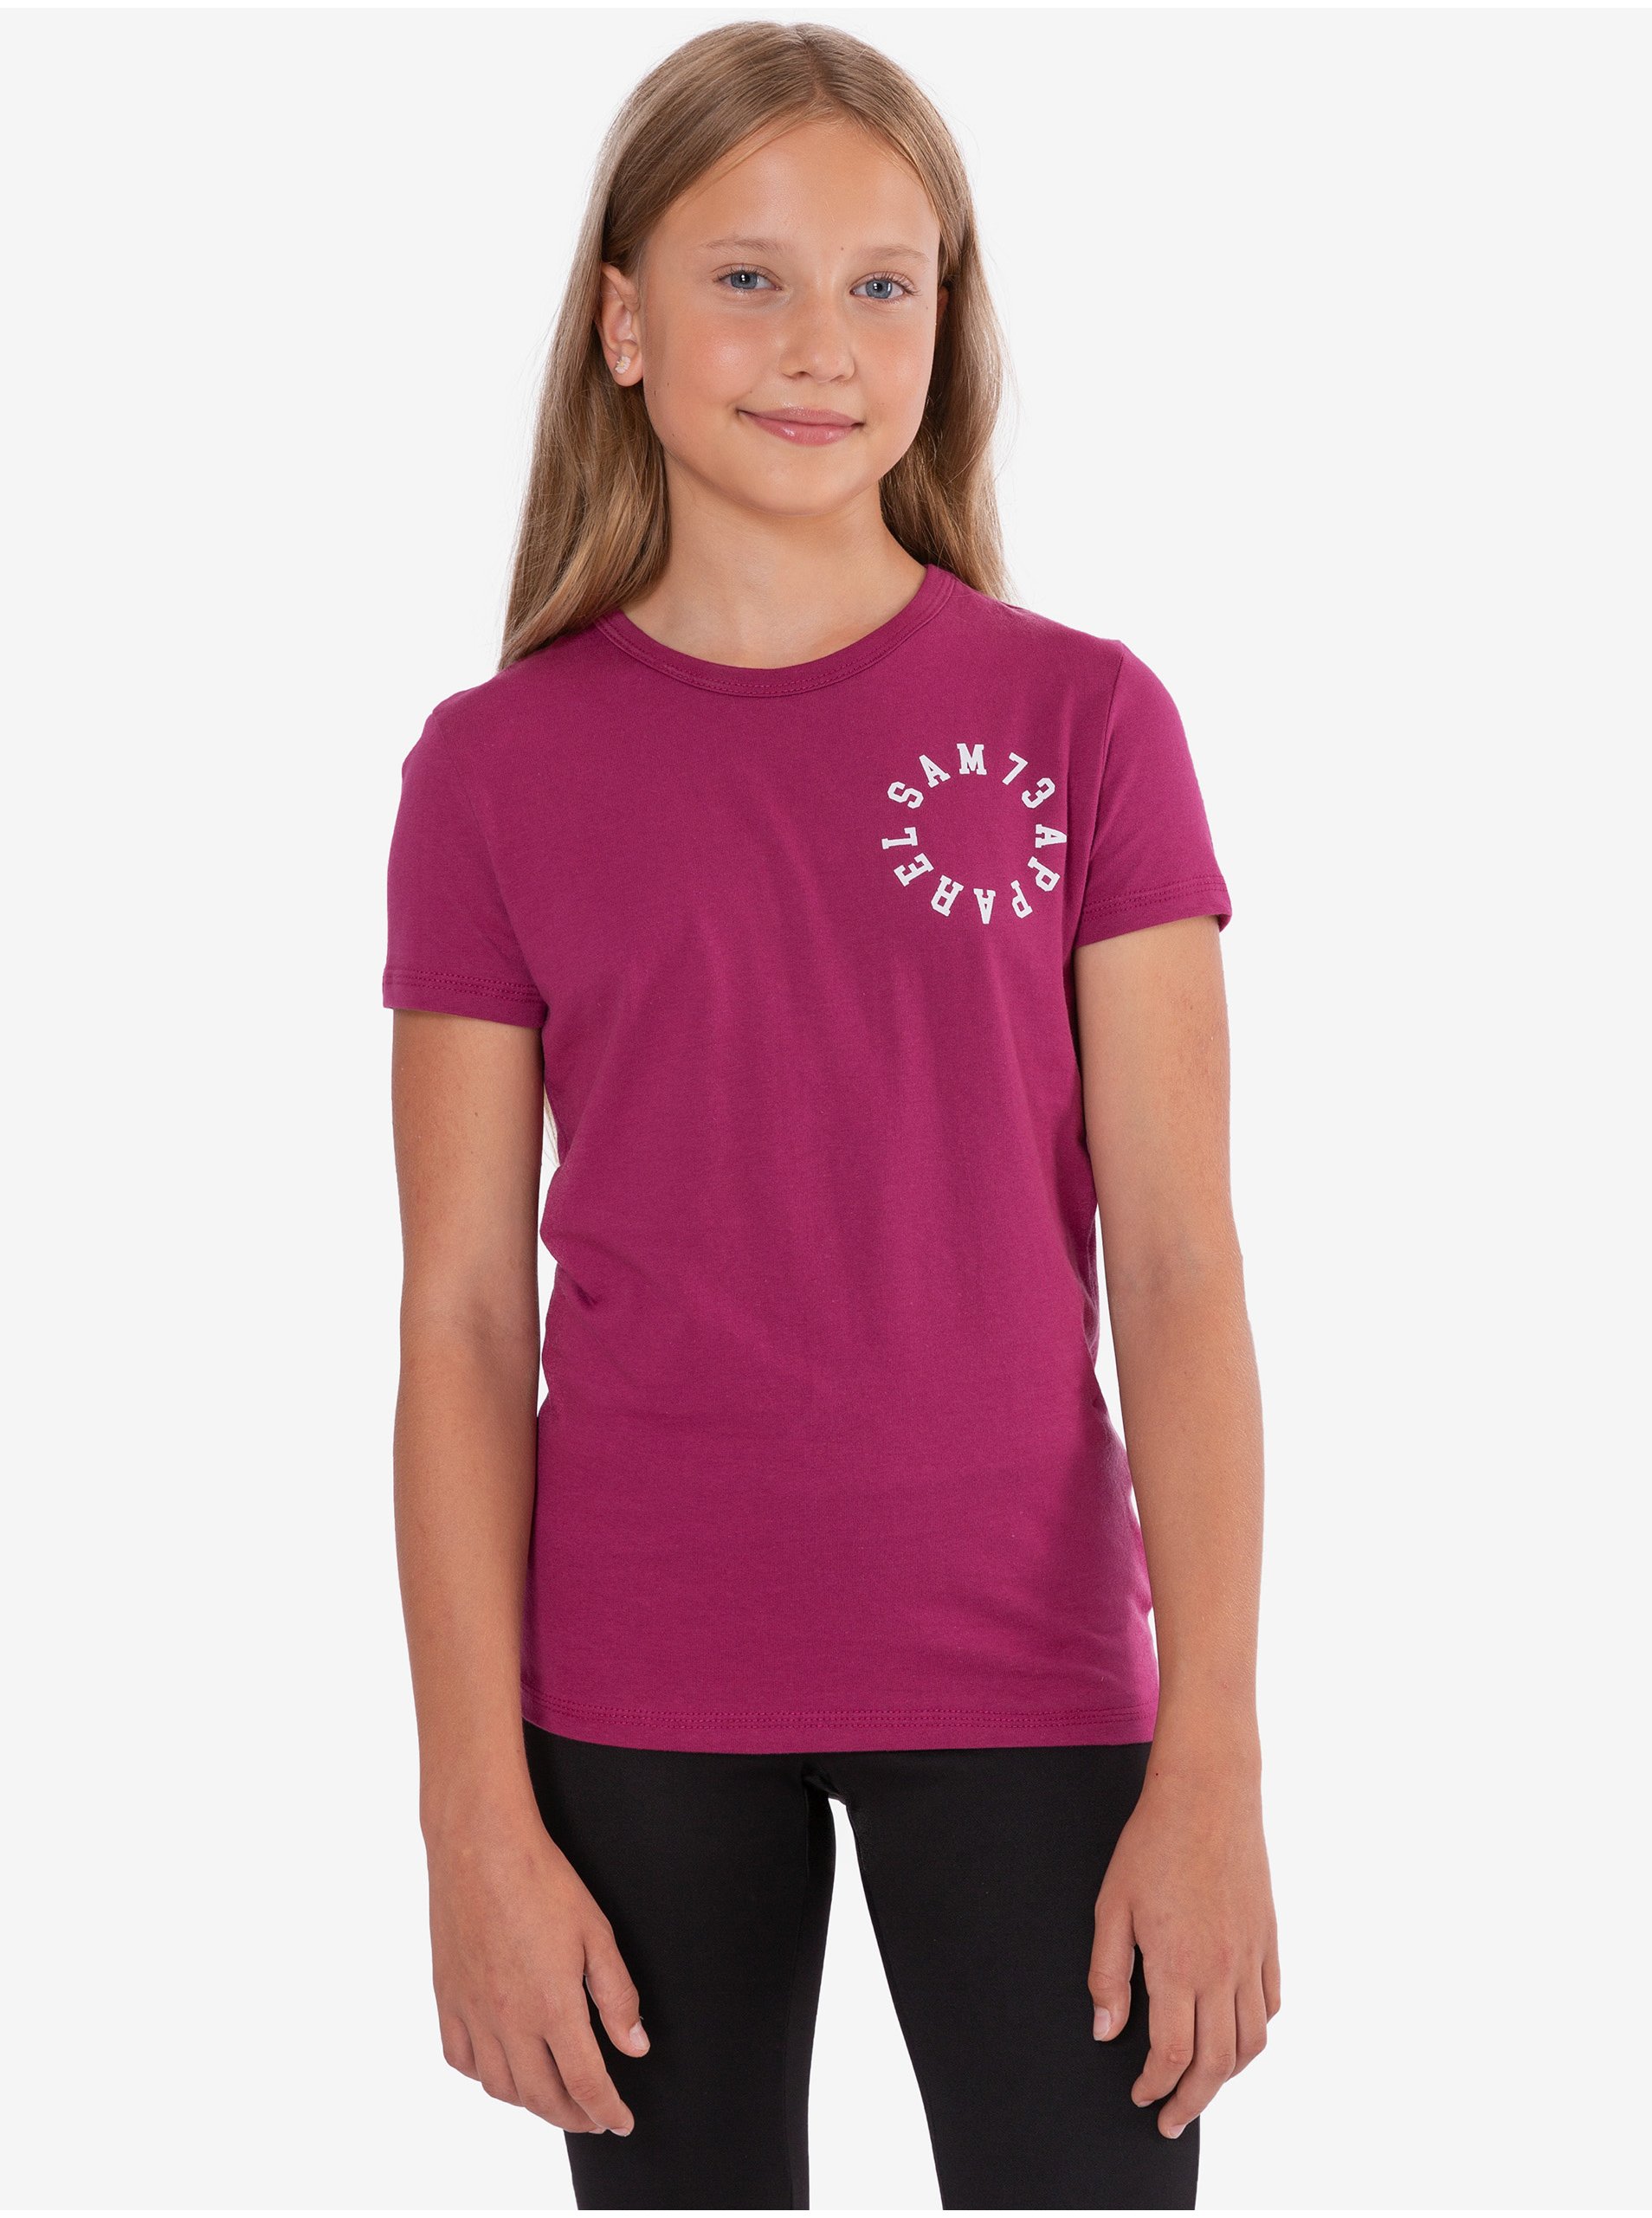 Lacno Tmavoružové dievčenské tričko s potlačou SAM 73